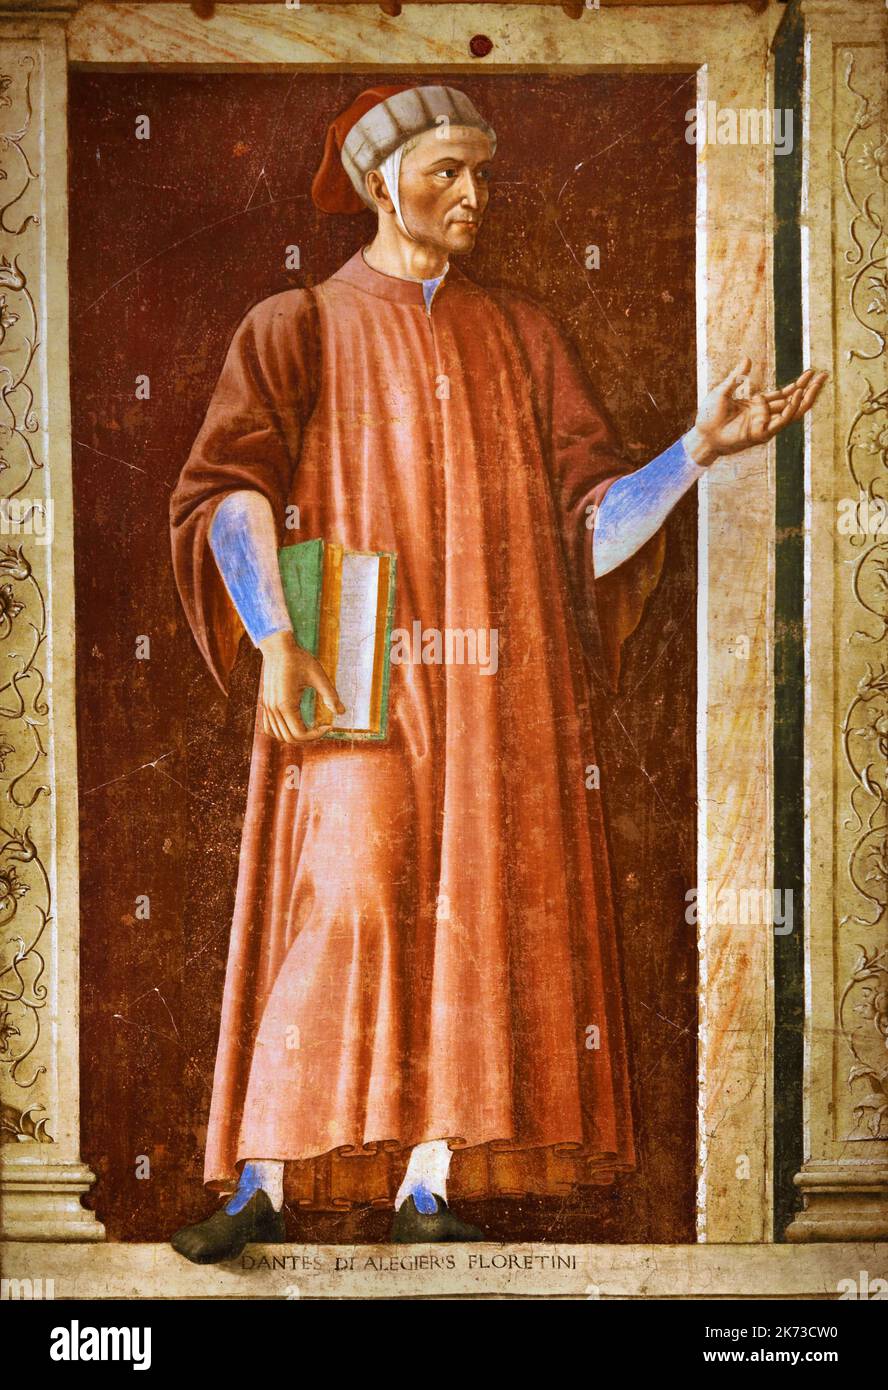 L'affresco di Dante Alighieri,1450, dipinto da Andrea del Castagno,1420 - 1457, Firenze, Dante Alighieri era un italiano, poeta, scrittore e filosofo, la sua Divina Commedia, ) Foto Stock